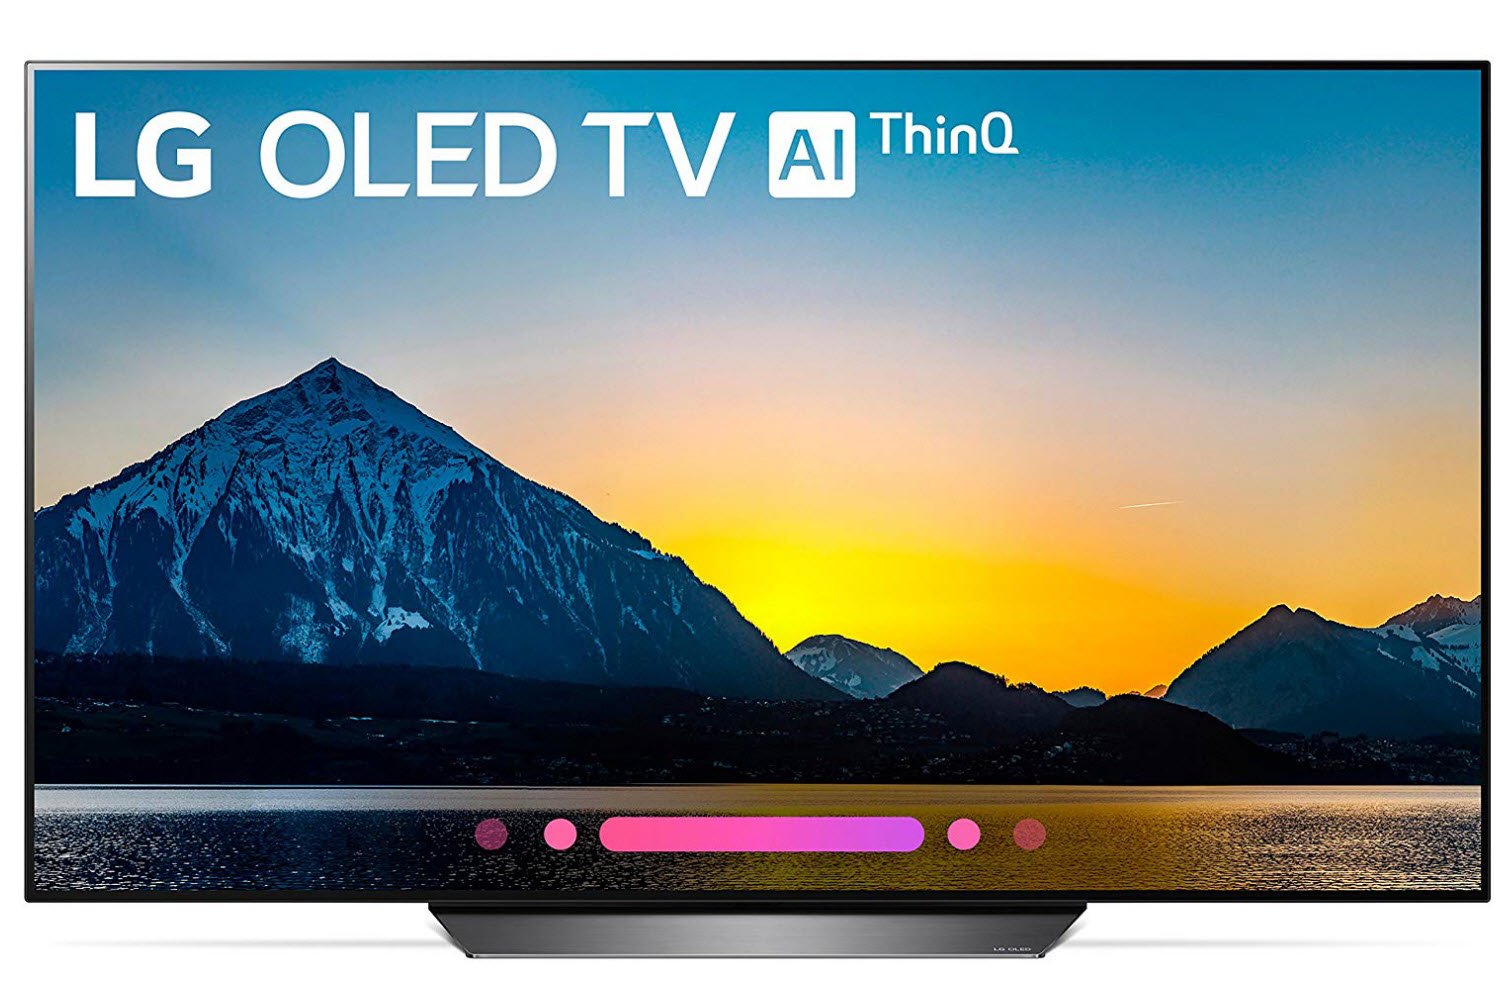 LG 55 inches 4K Smart OLED TV OLED55B8PUA (2018)